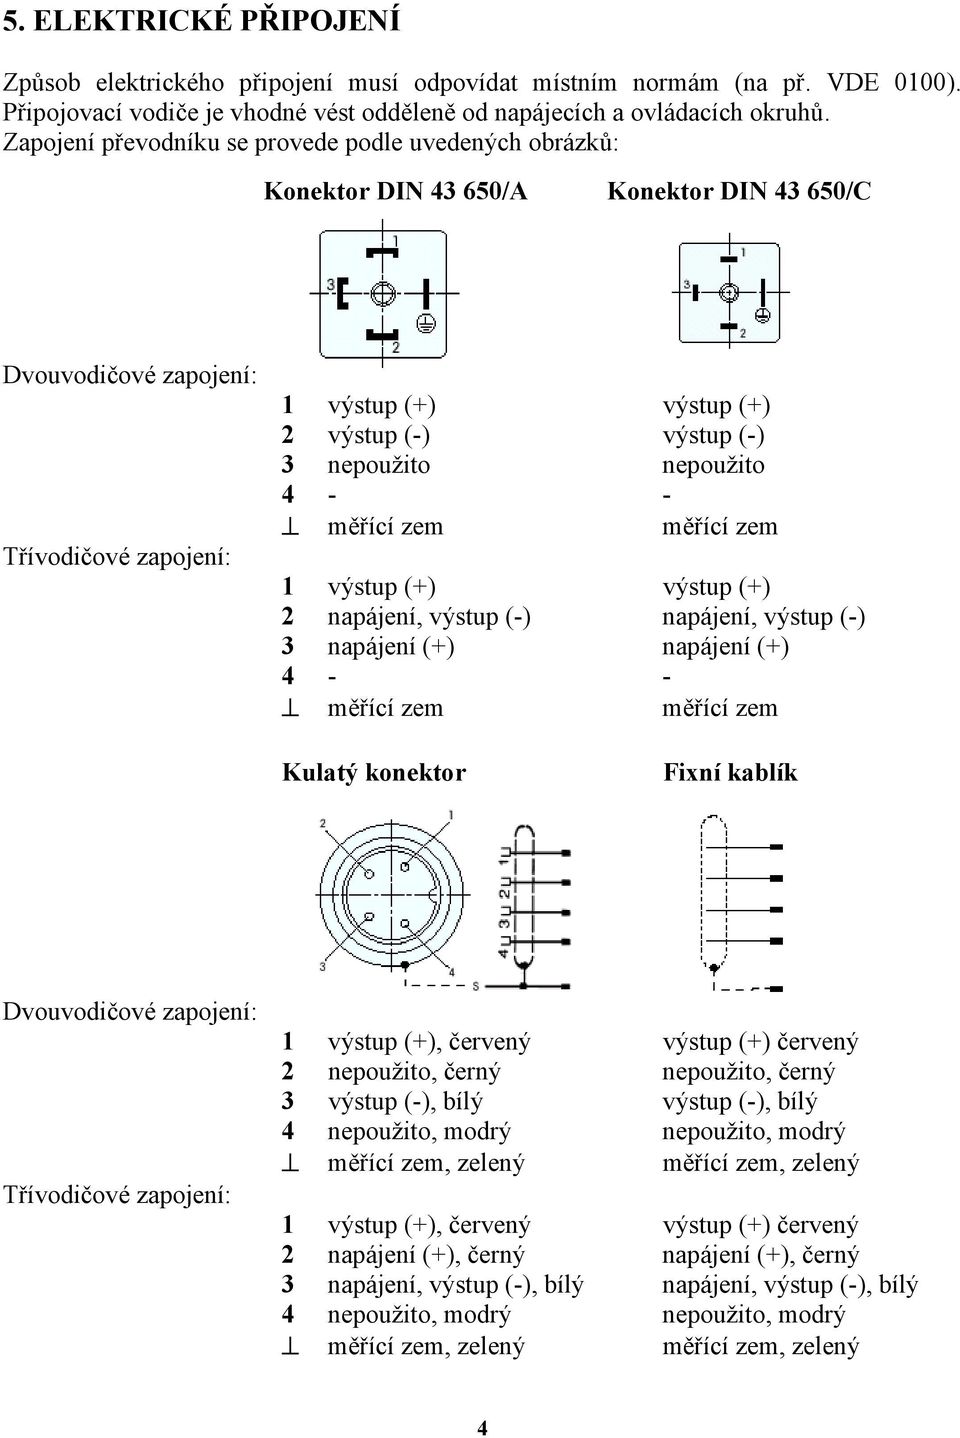 nepoužito nepoužito 4 - - měřící zem měřící zem 1 výstup (+) výstup (+) 2 napájení, výstup (-) napájení, výstup (-) 3 napájení (+) napájení (+) 4 - - měřící zem měřící zem Kulatý konektor Fixní